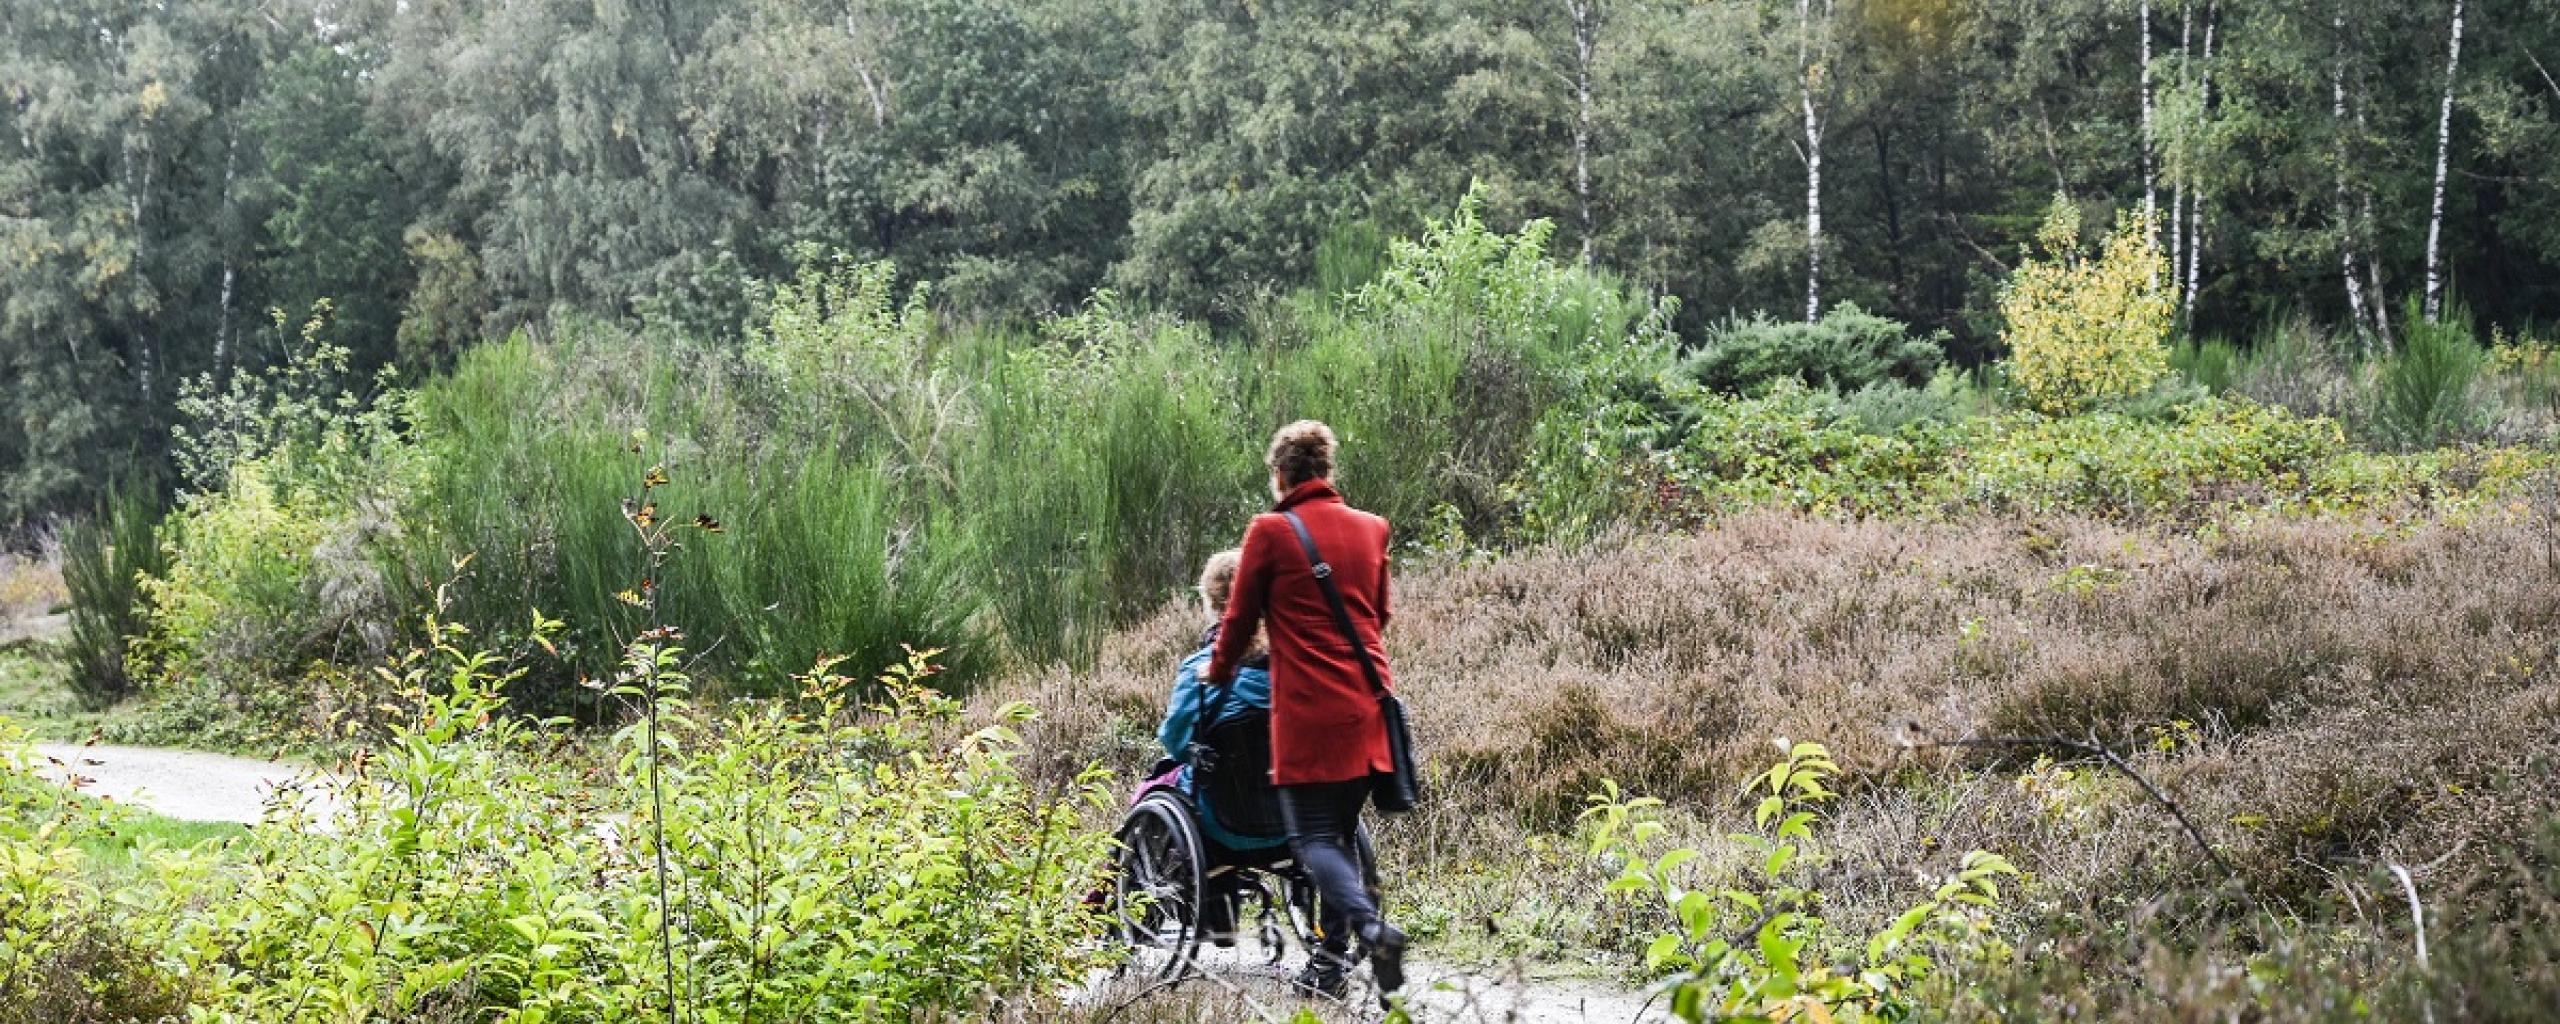 wandelen met rolstoel in bos